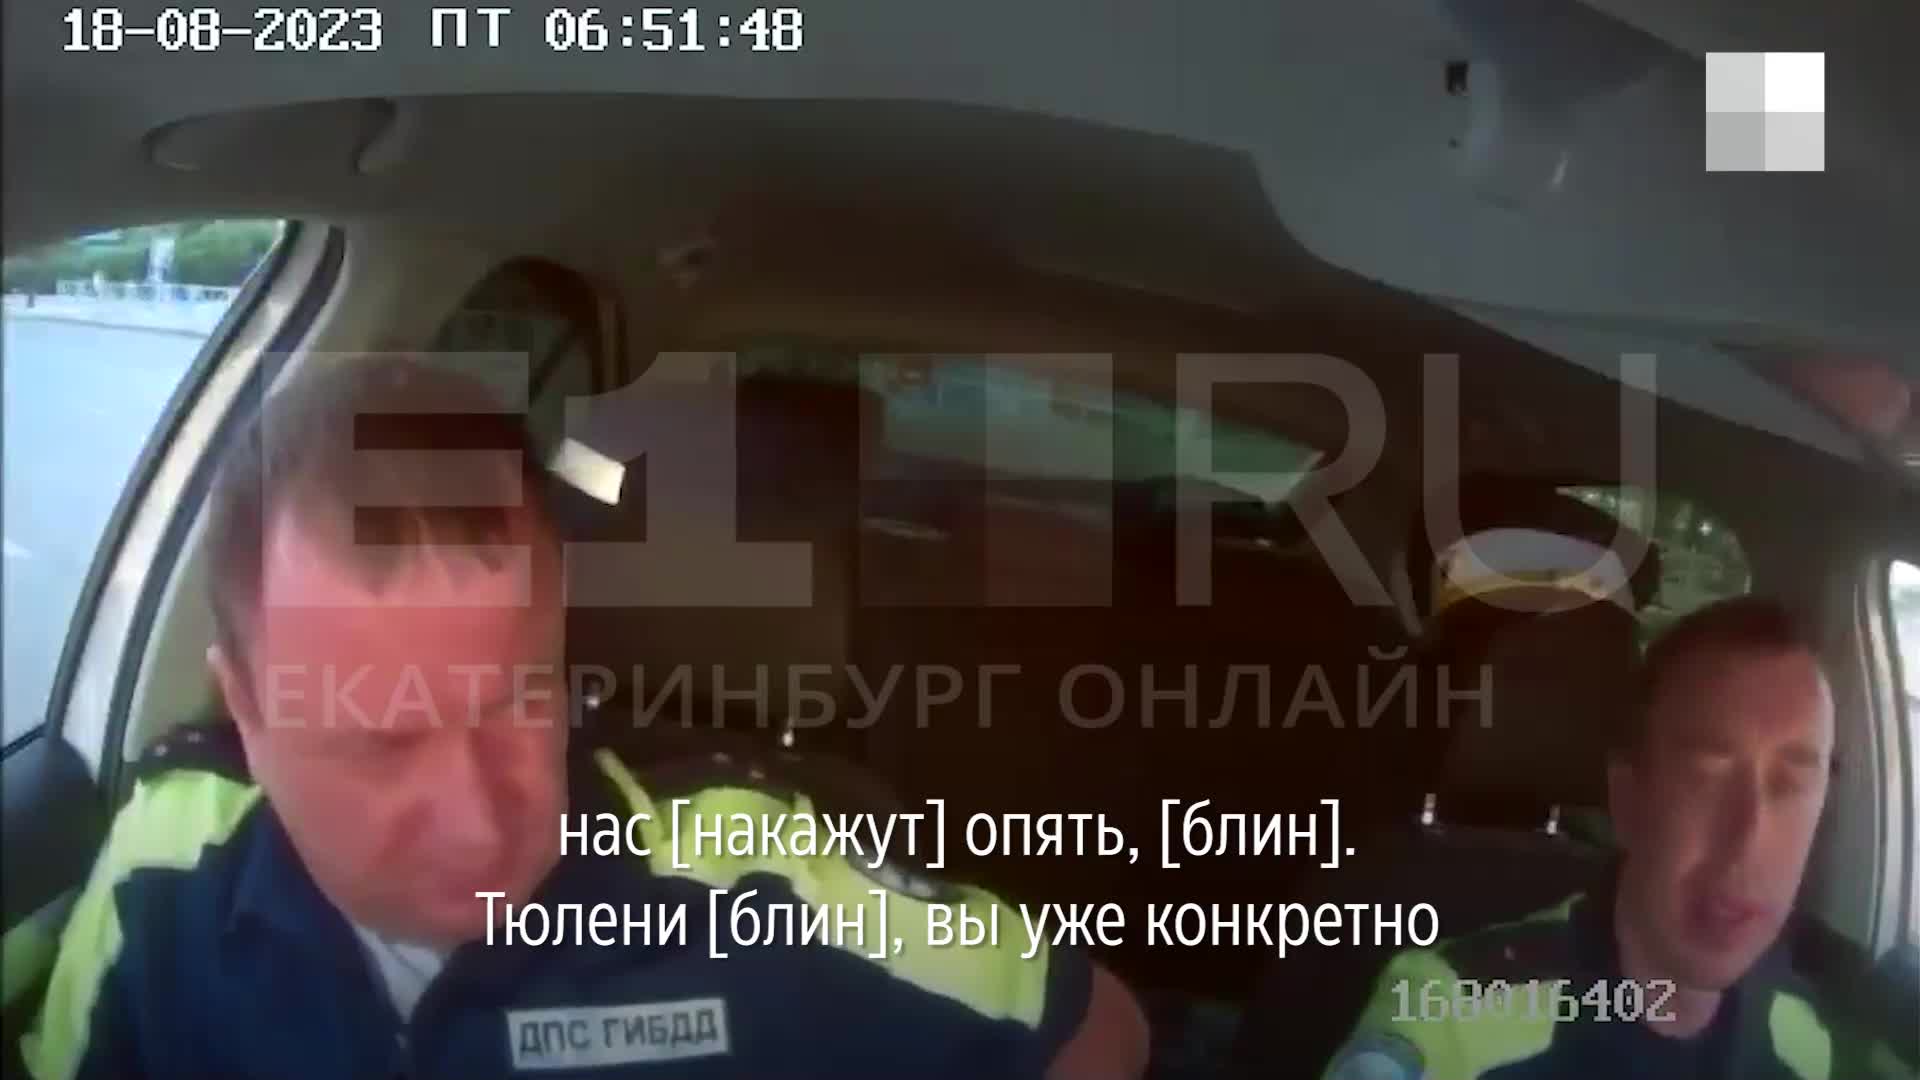 Екатеринбург - Релевантные порно видео (5791 видео)